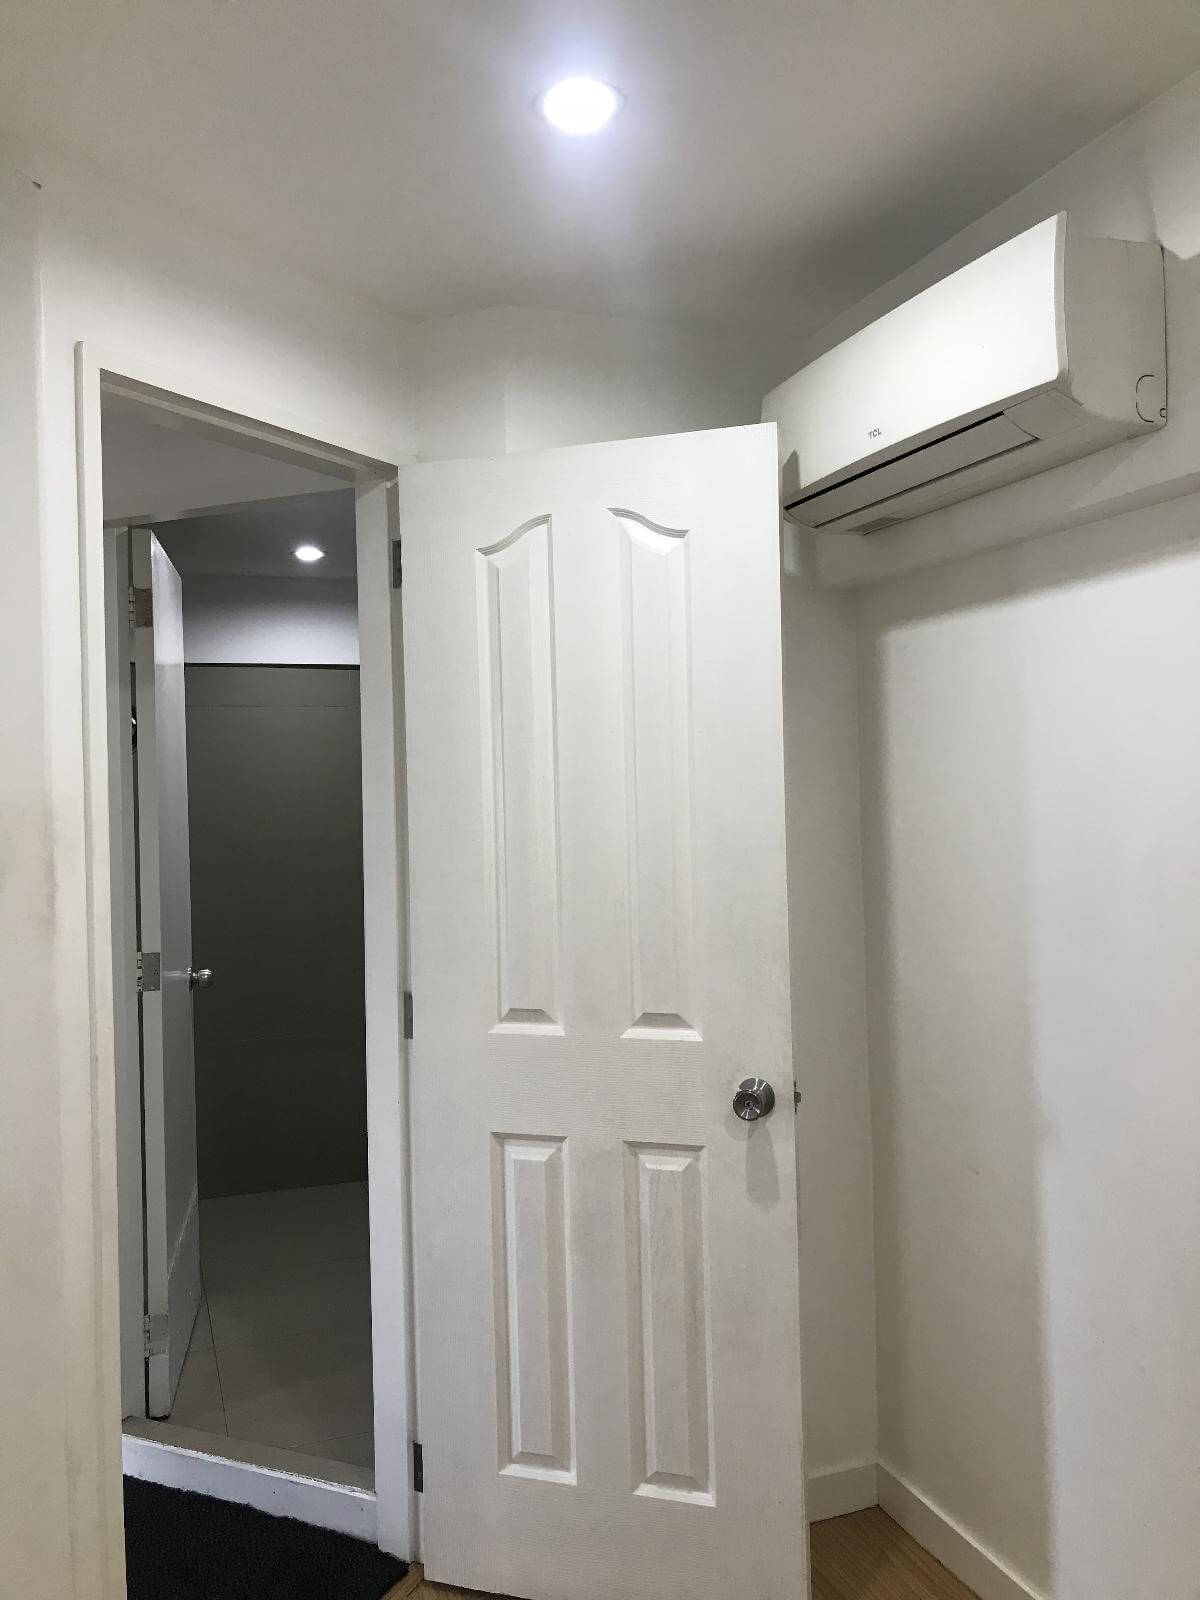 Second Bedroom's door access